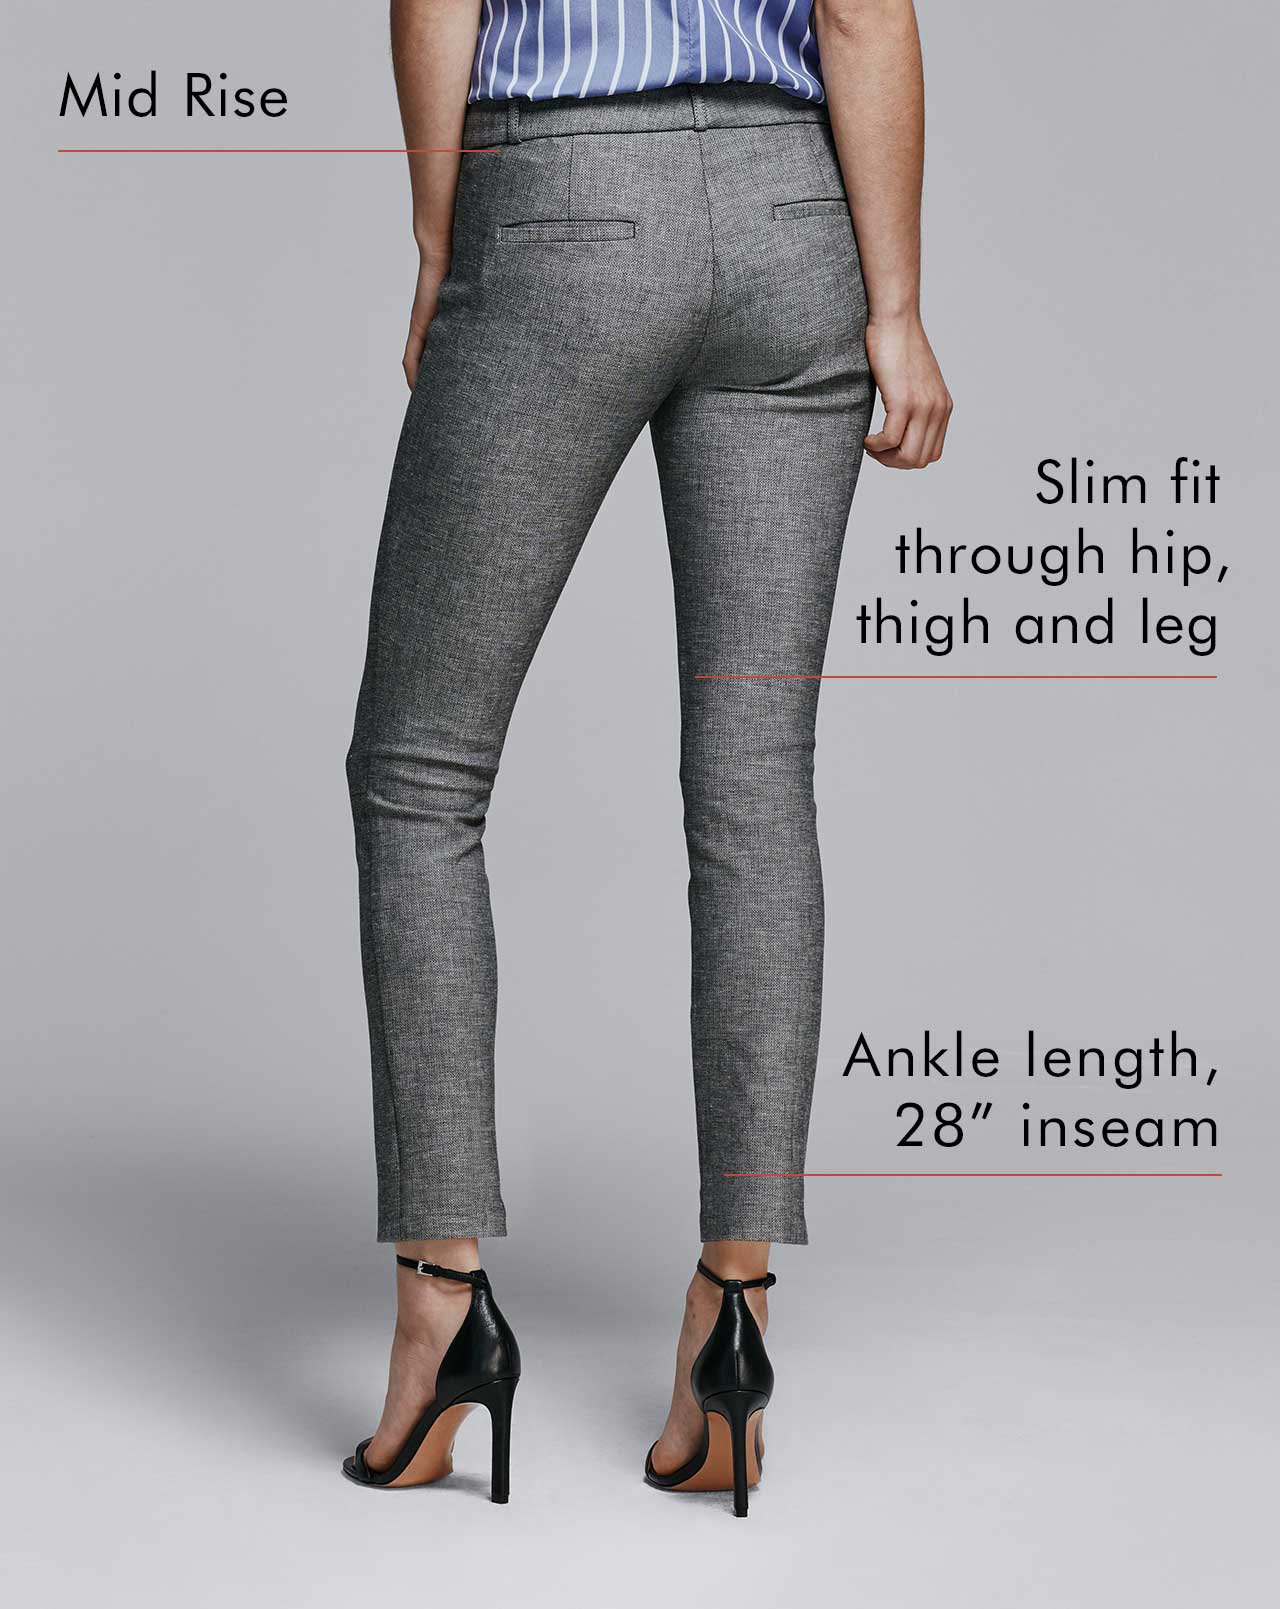 Fit Guide Women's Pants - Sloan